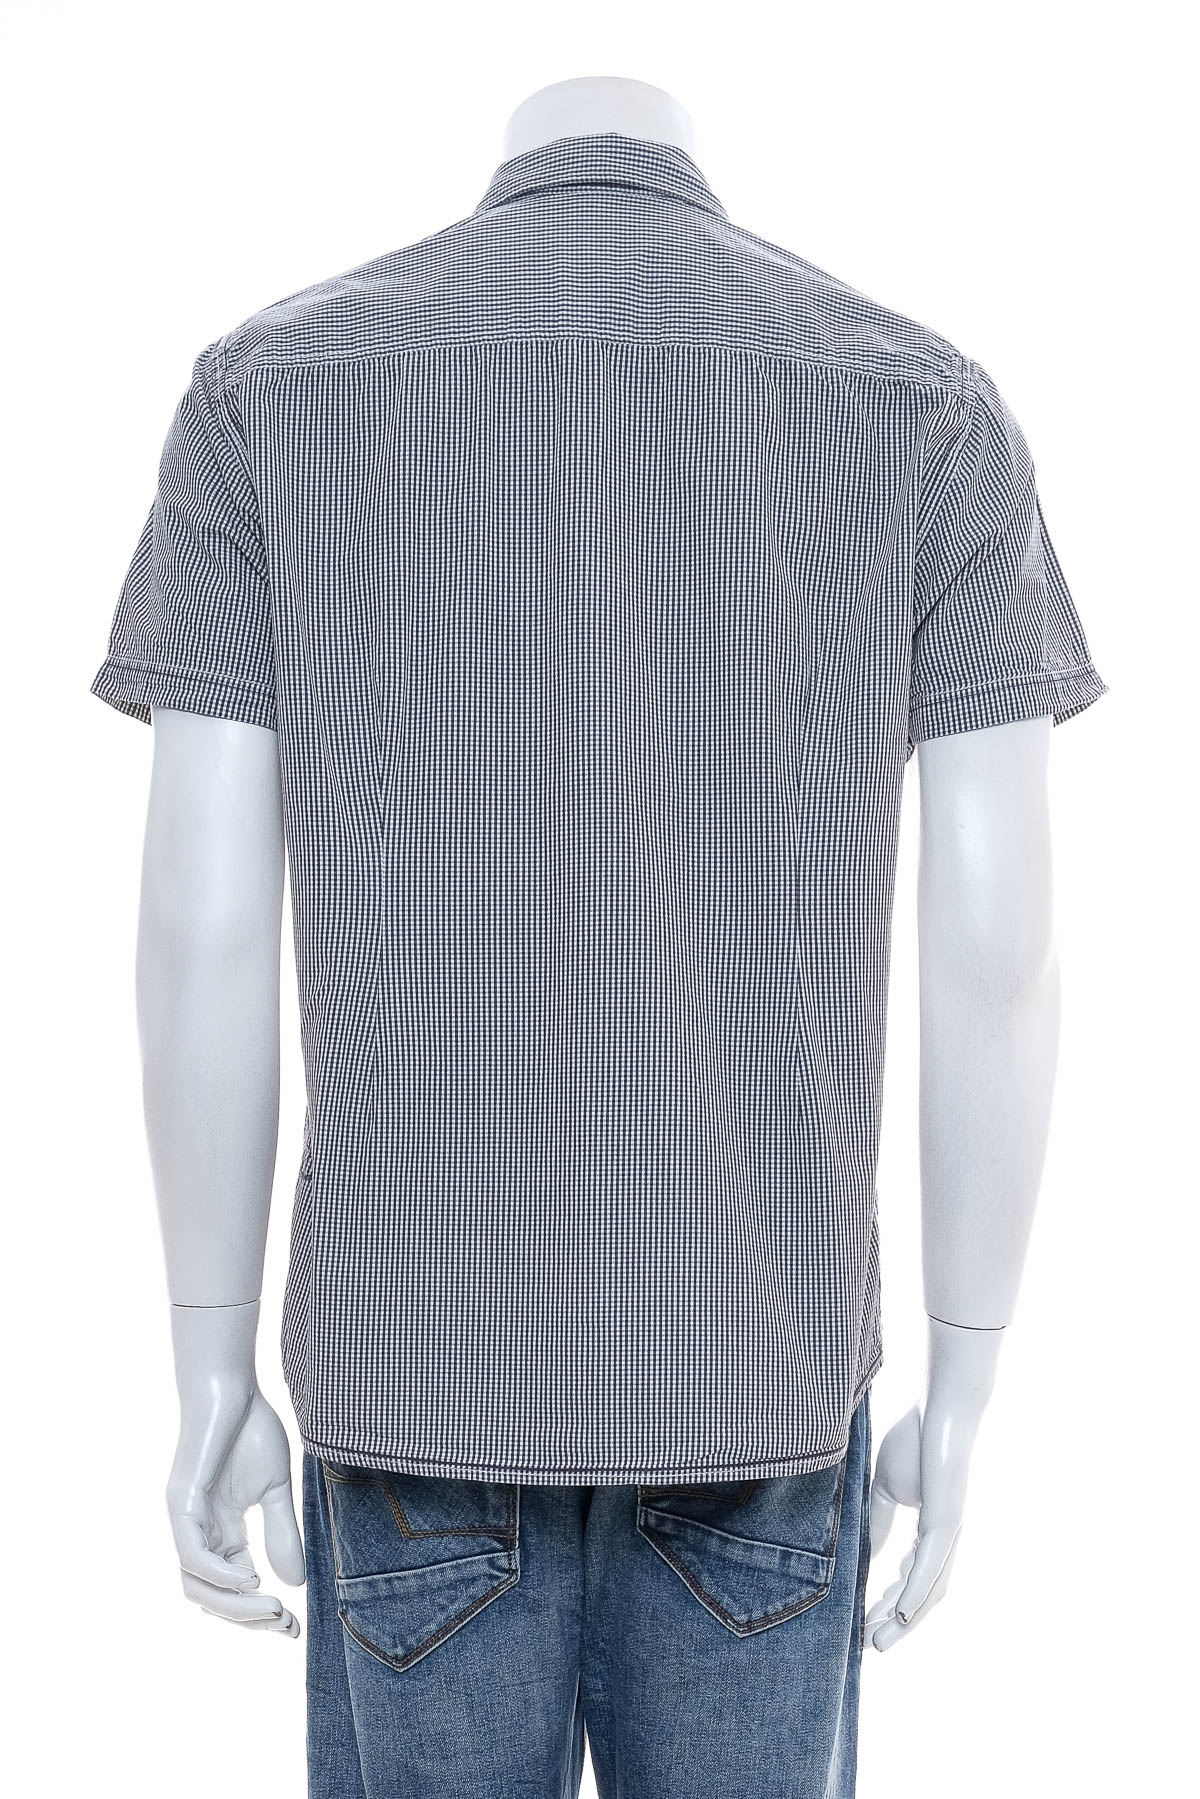 Ανδρικό πουκάμισο - S.Oliver - 1